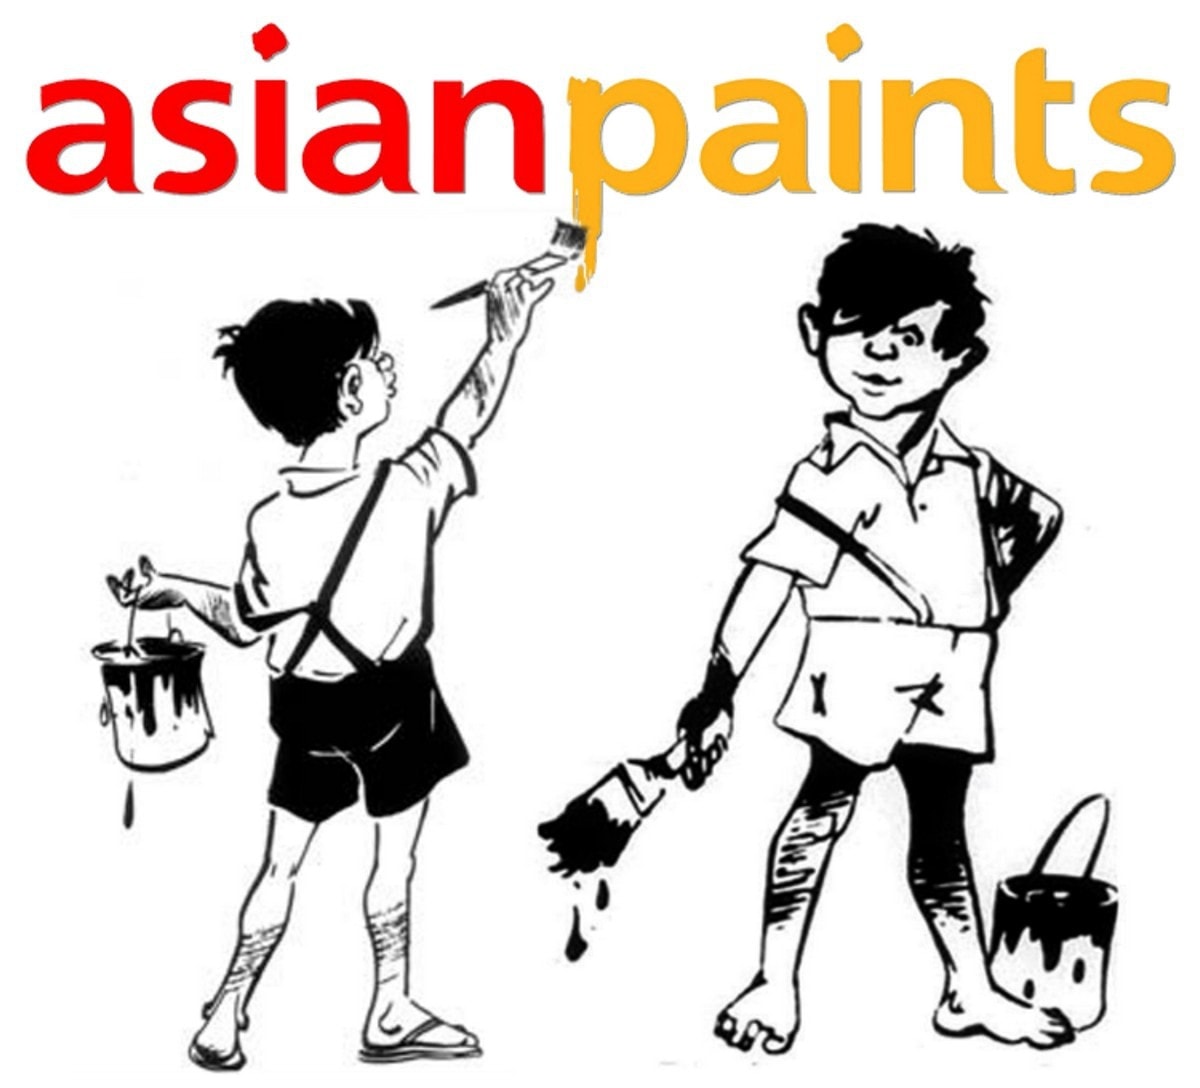 Asian paints corporate